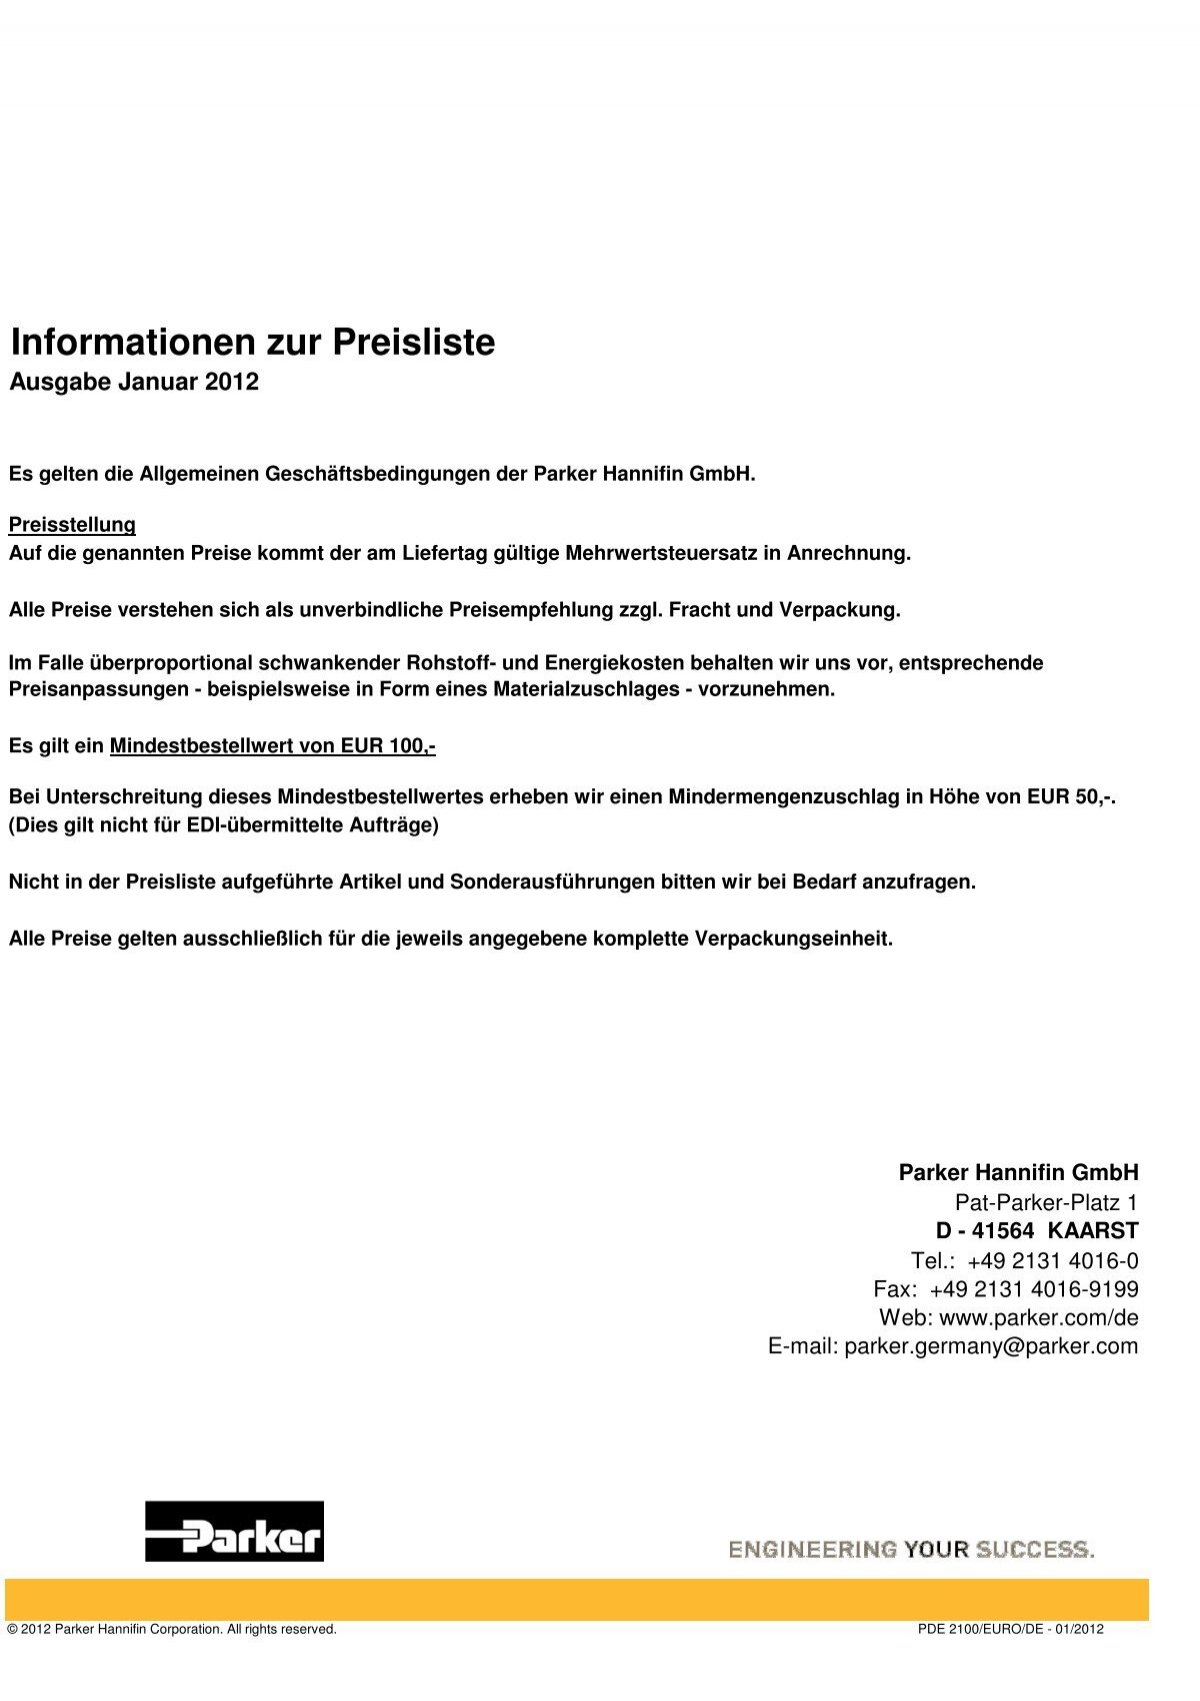 Informationen zur Preisliste - JK Pneumatik GmbH